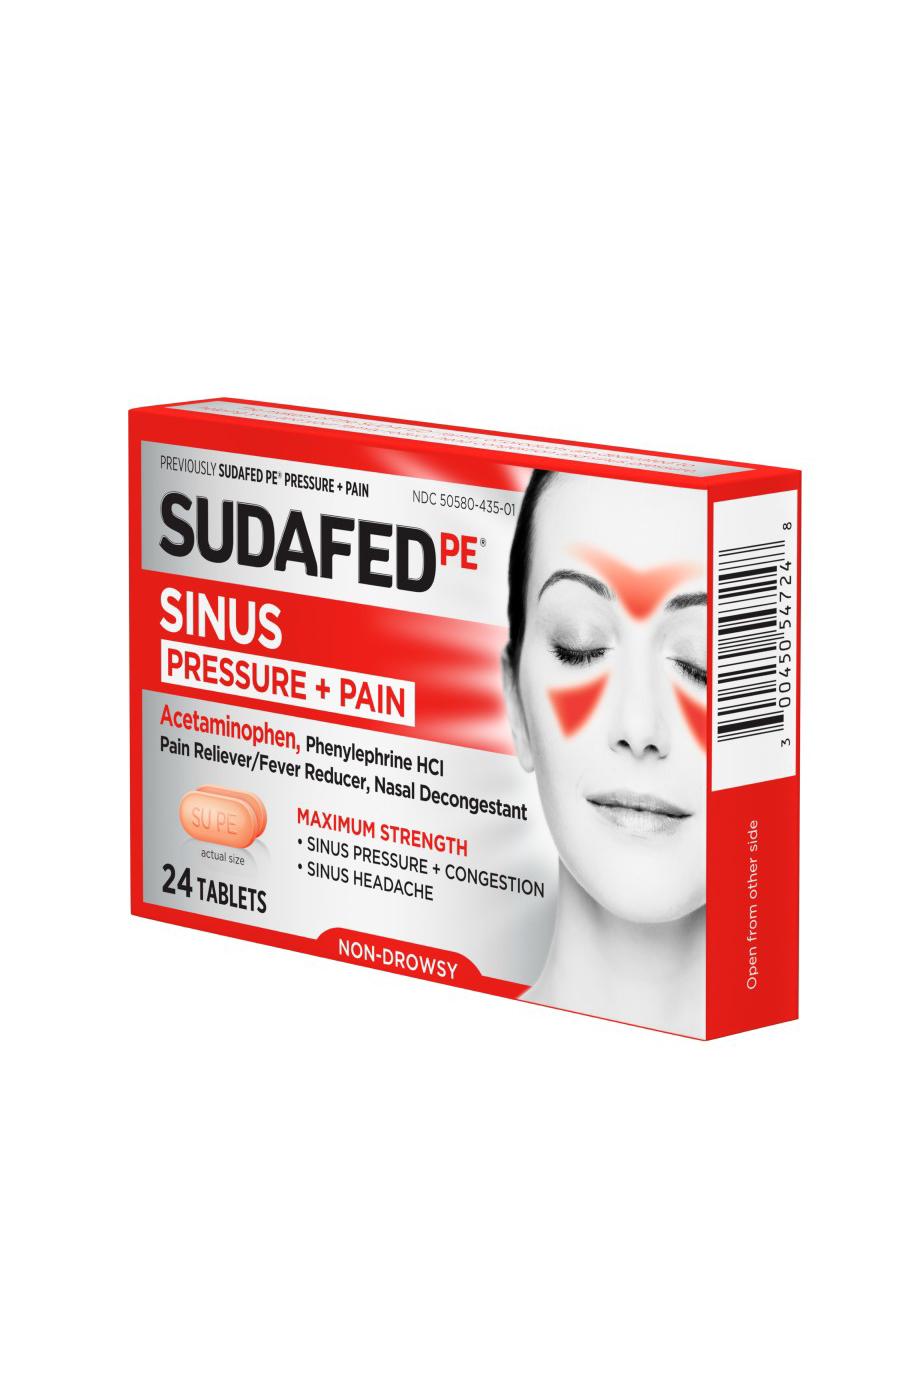 Sudafed PE Sinus Pressure + Pain Tablets; image 6 of 7